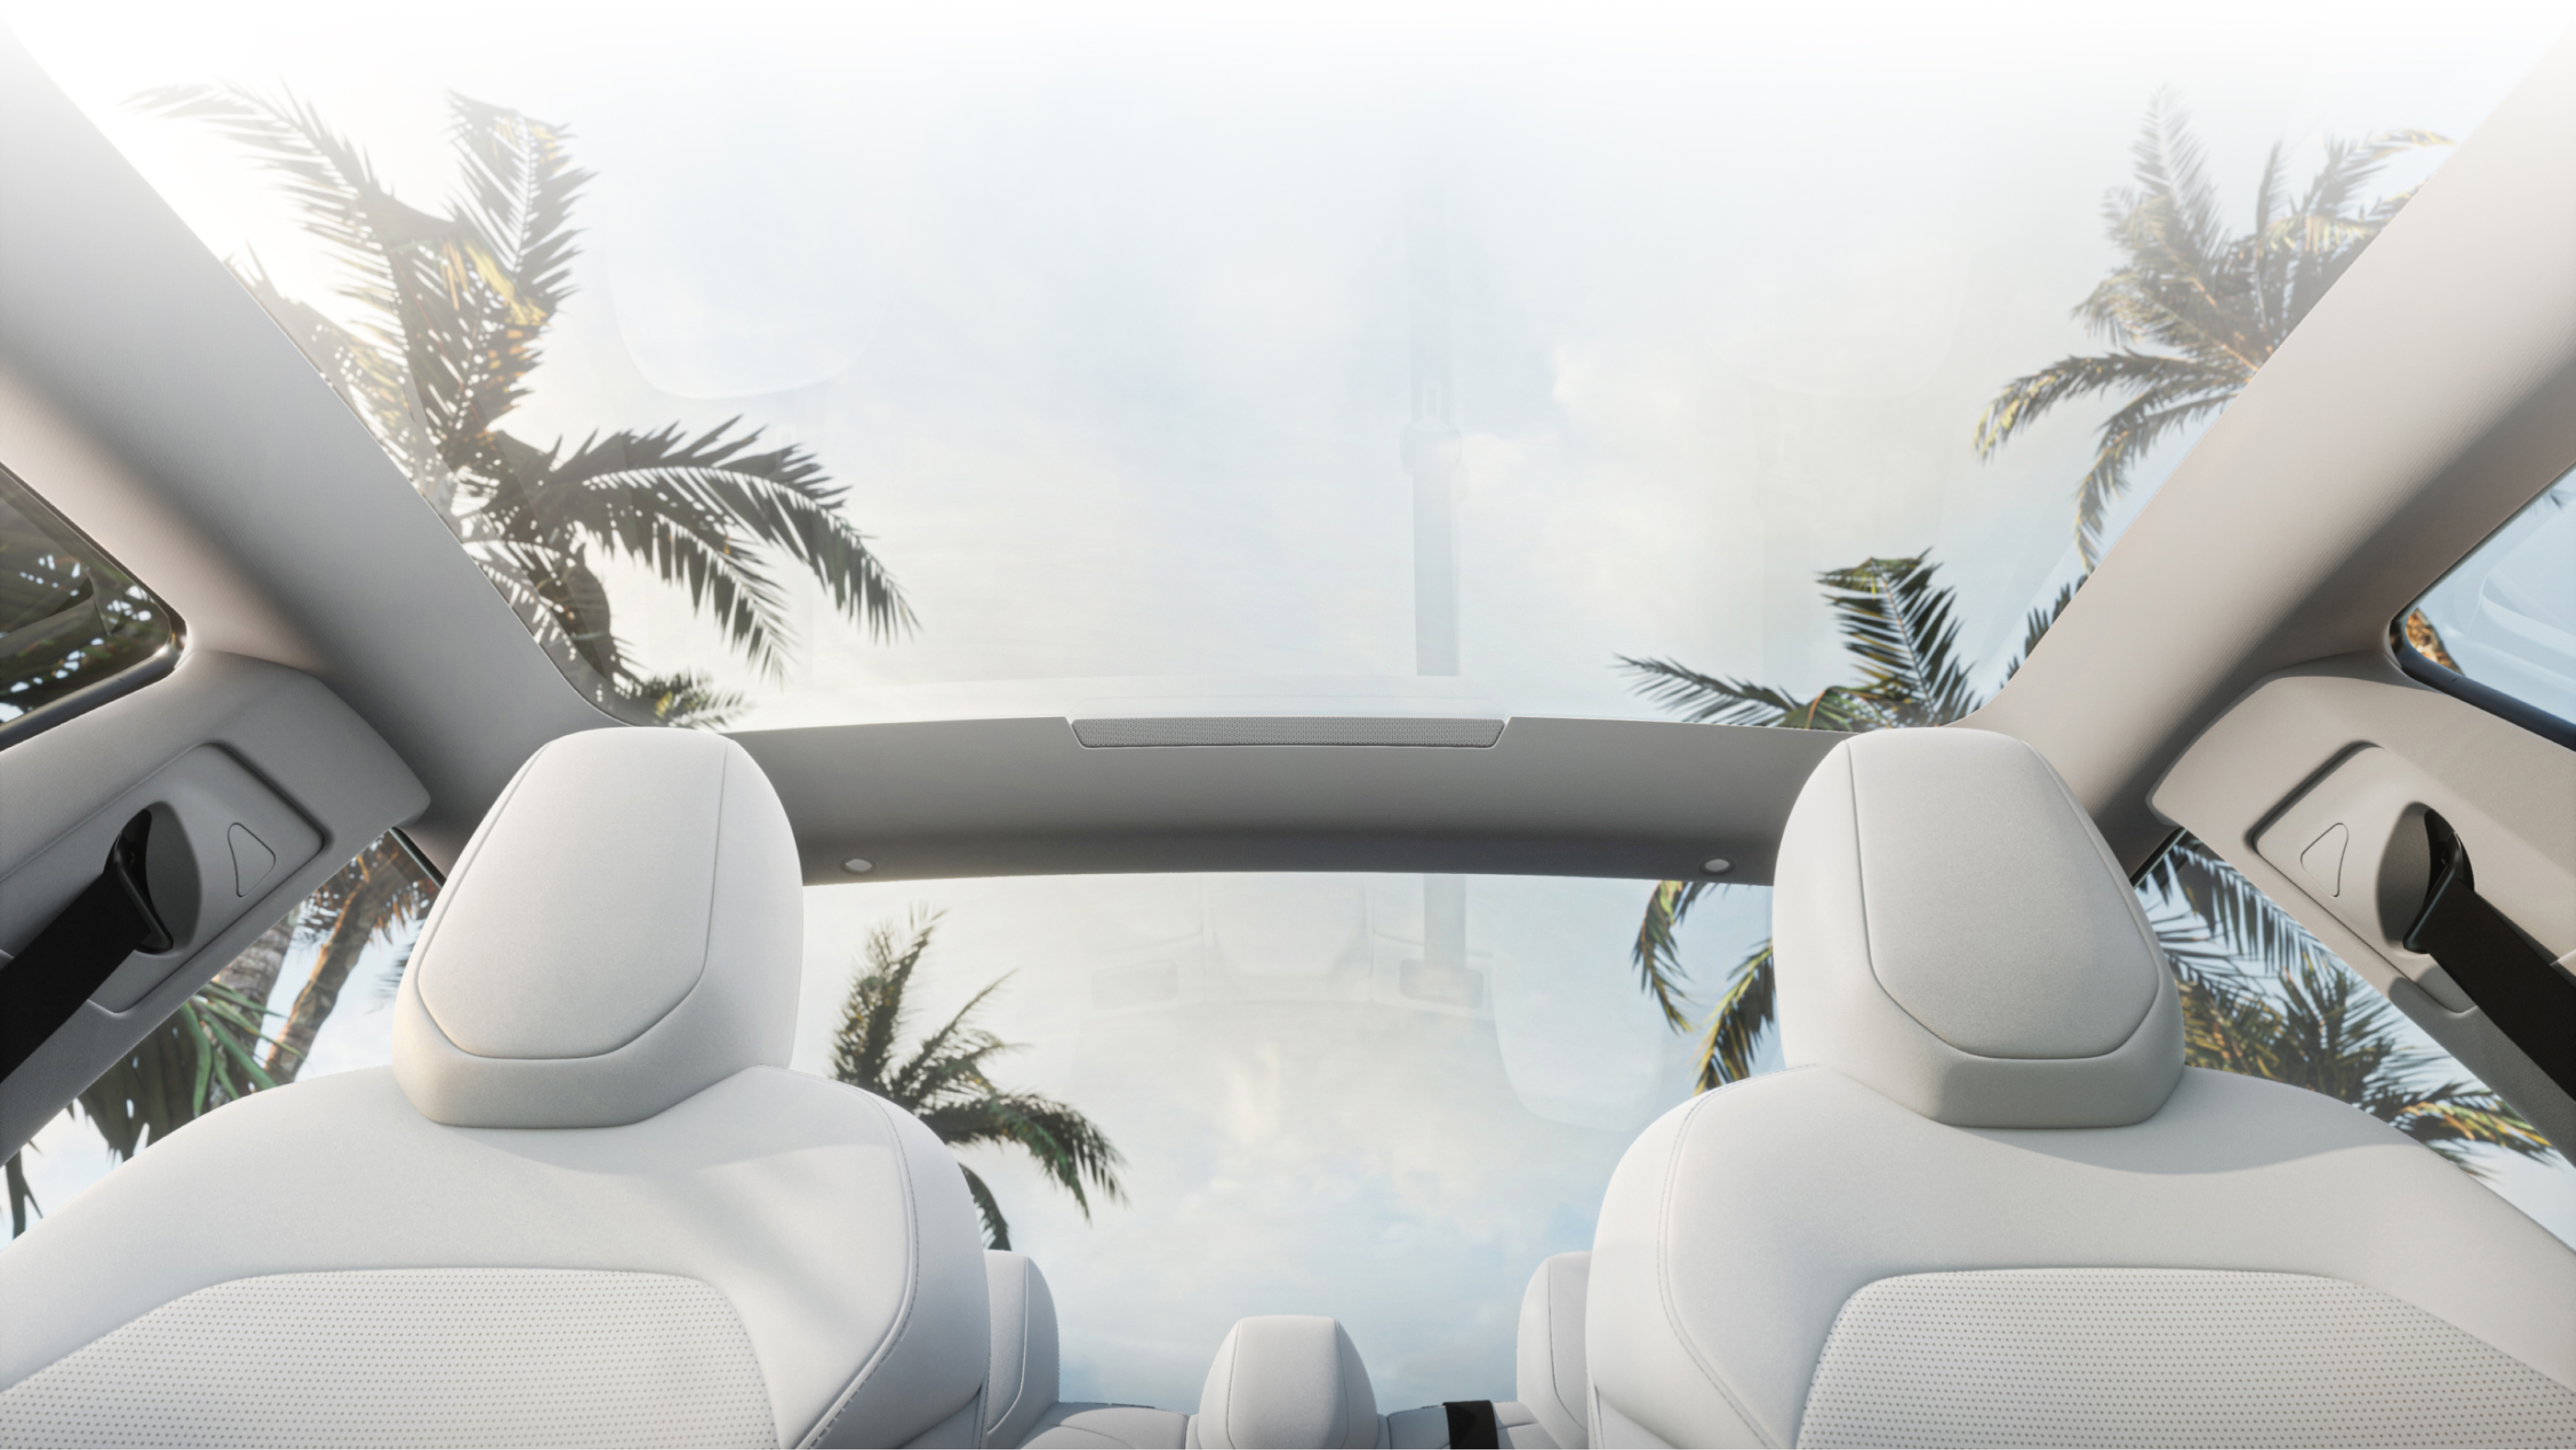 坐在白色前排座椅上向上看的仰视图，透过玻璃车顶眺望棕榈树和蓝天。